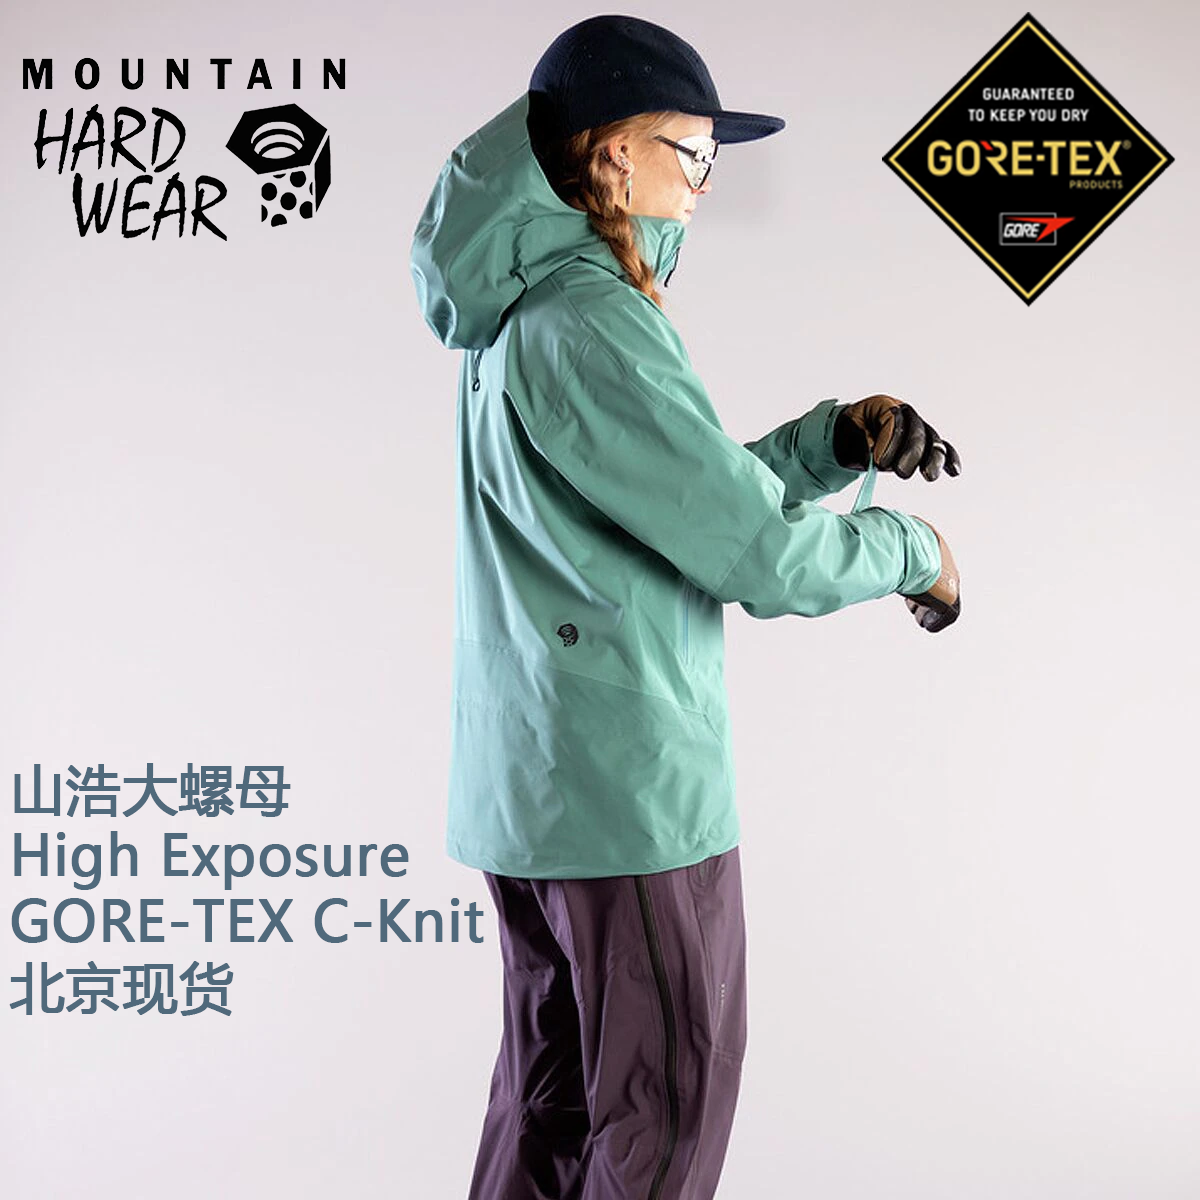 山浩大螺母冲锋衣 Mountain Hardwear High Exposure GTX女冲锋衣